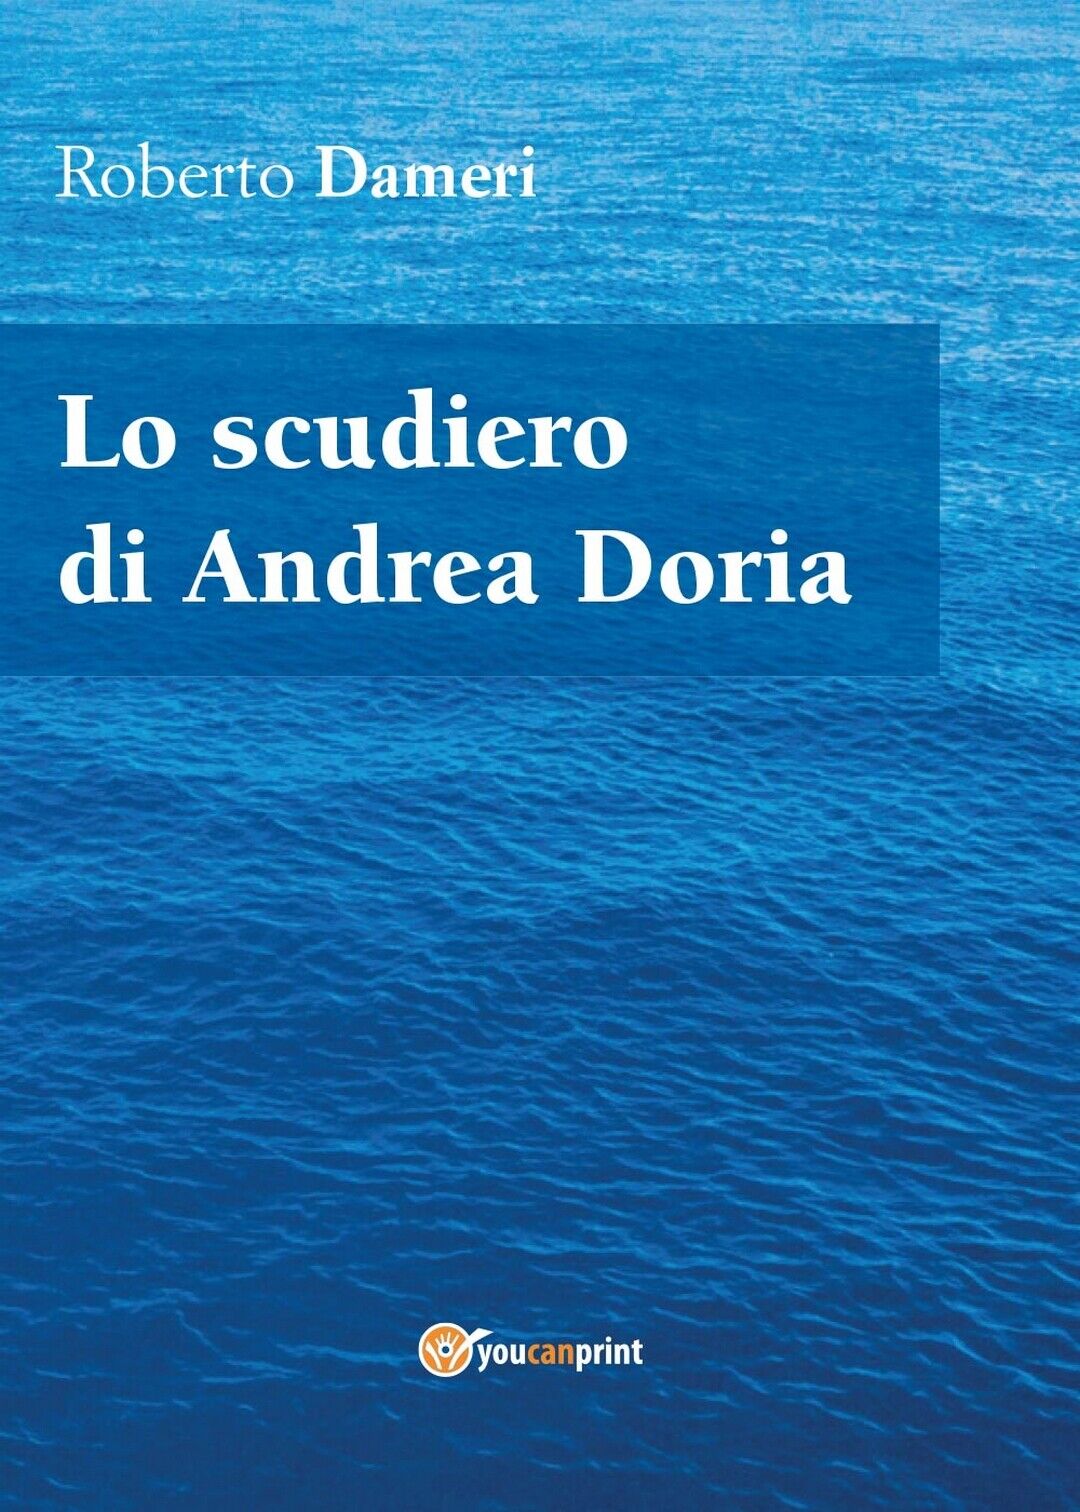 Lo scudiero di Andrea Doria  di Roberto Dameri,  2017,  Youcanprint